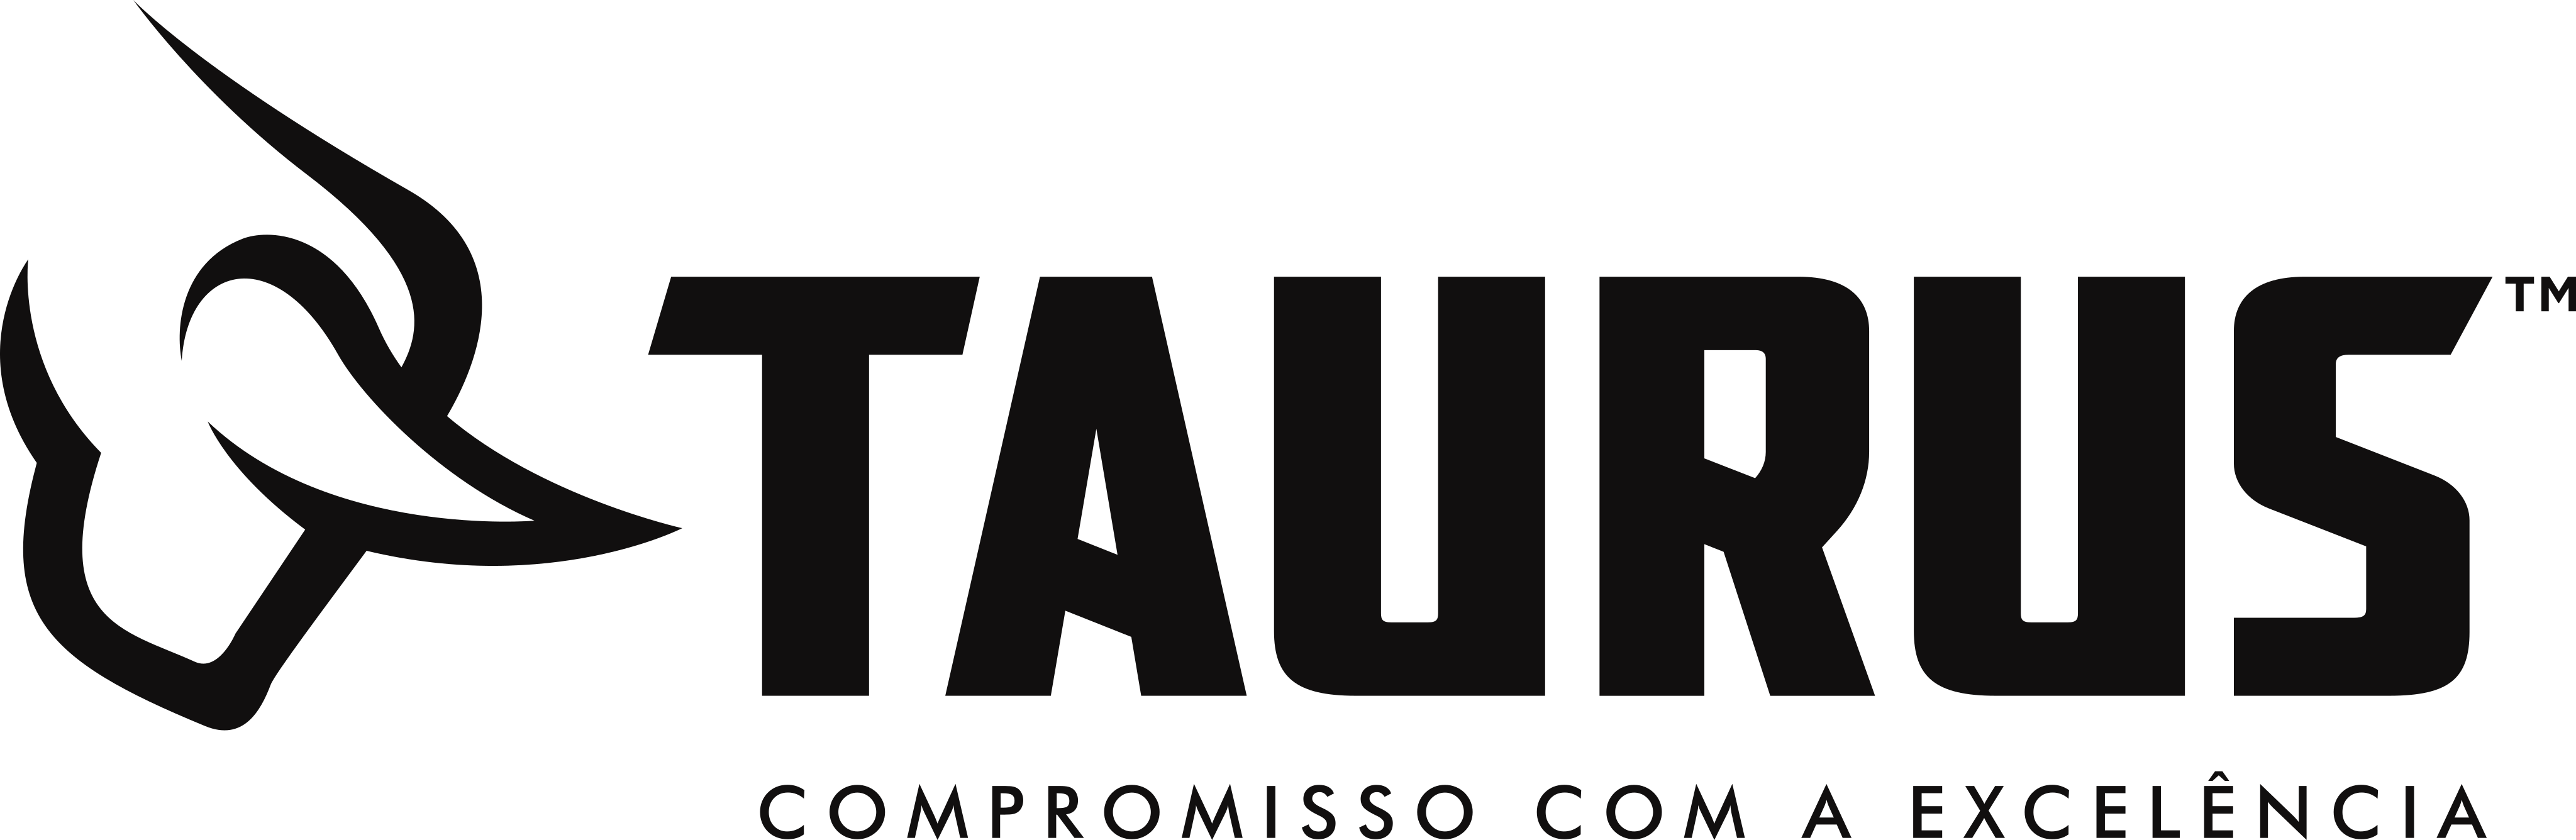 taurus logo 3 - Taurus Armas Logo